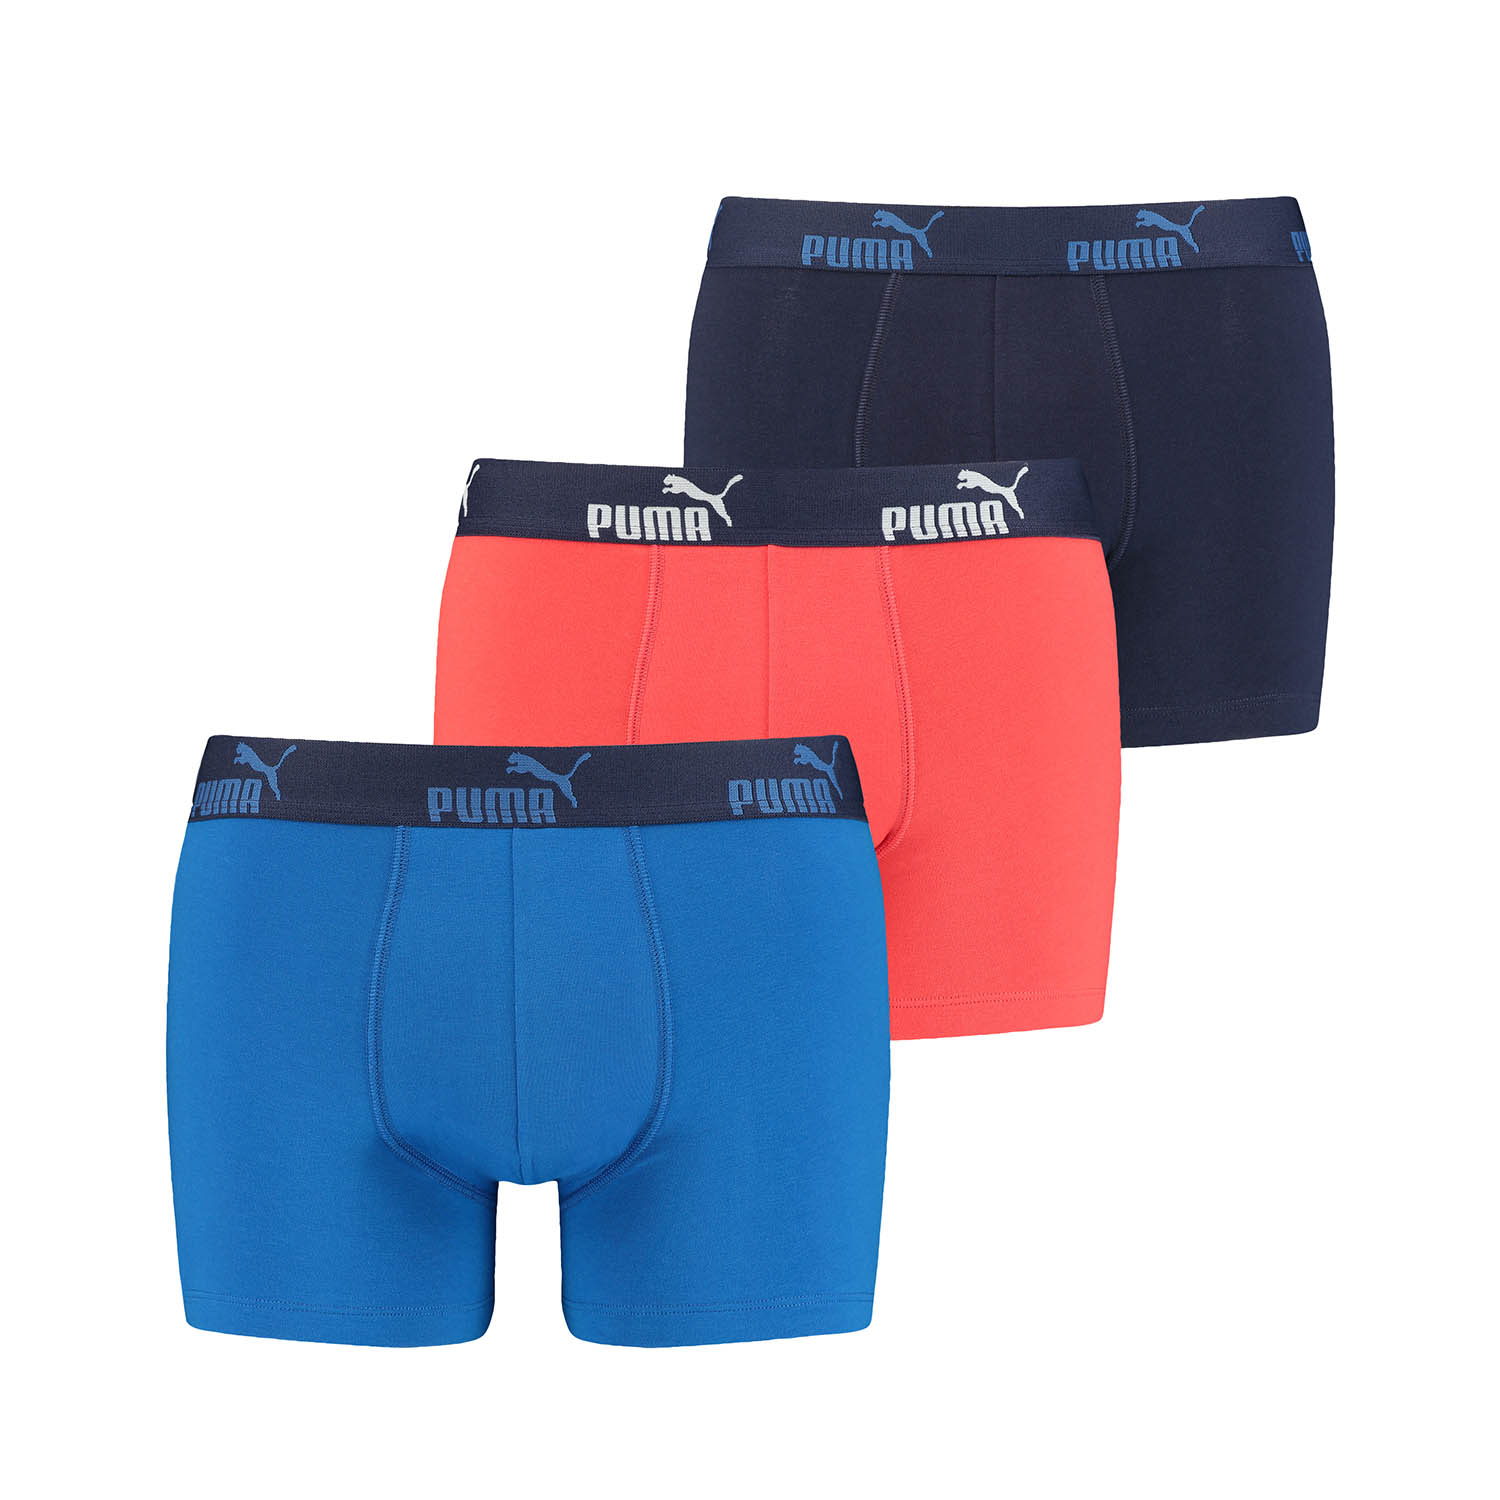 PUMA 12 er Pack Boxer Boxershorts Herren Unterwäsche sportliche Retro Pants, Farbe:Red/Blue, Bekleidungsgröße:S